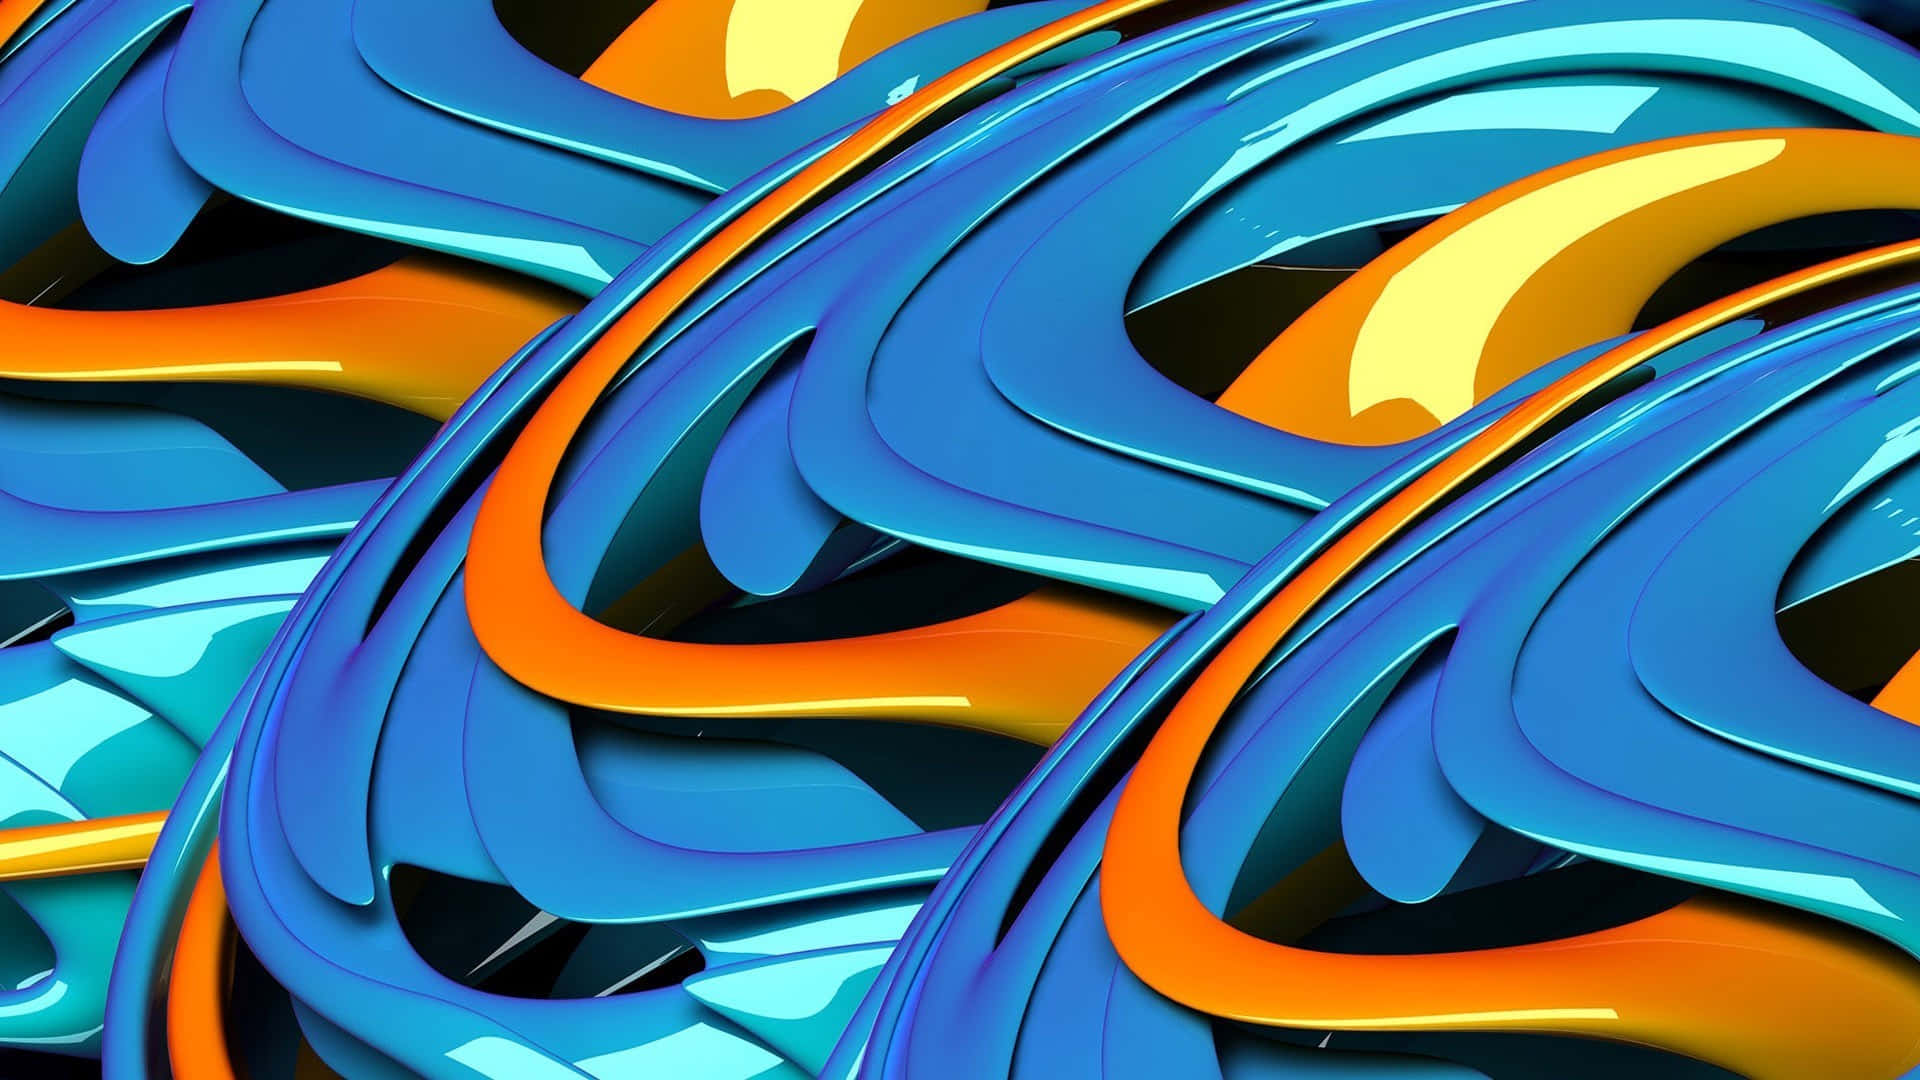 Diseñoabstracto En Naranja Y Azul Fondo de pantalla